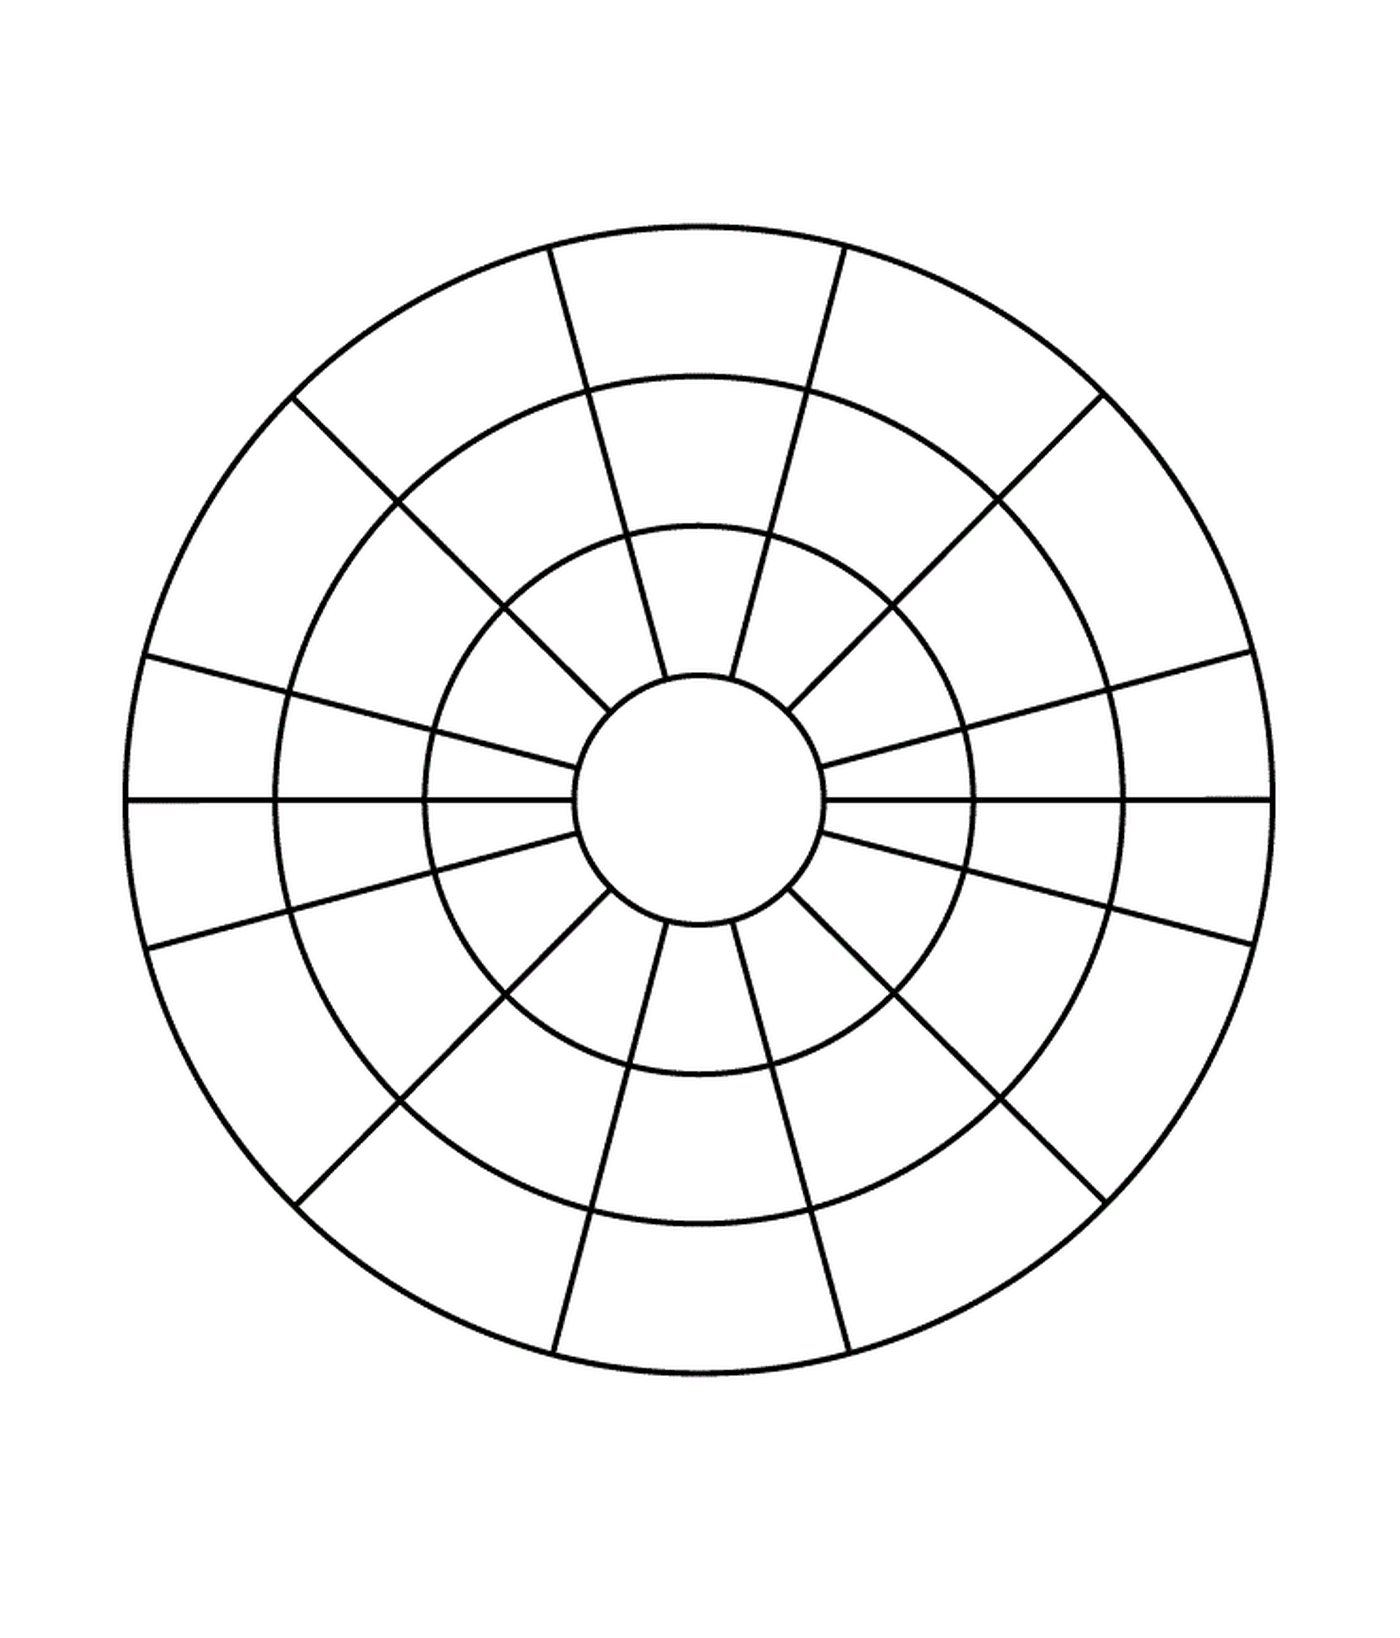  Круг разделен на четыре части 